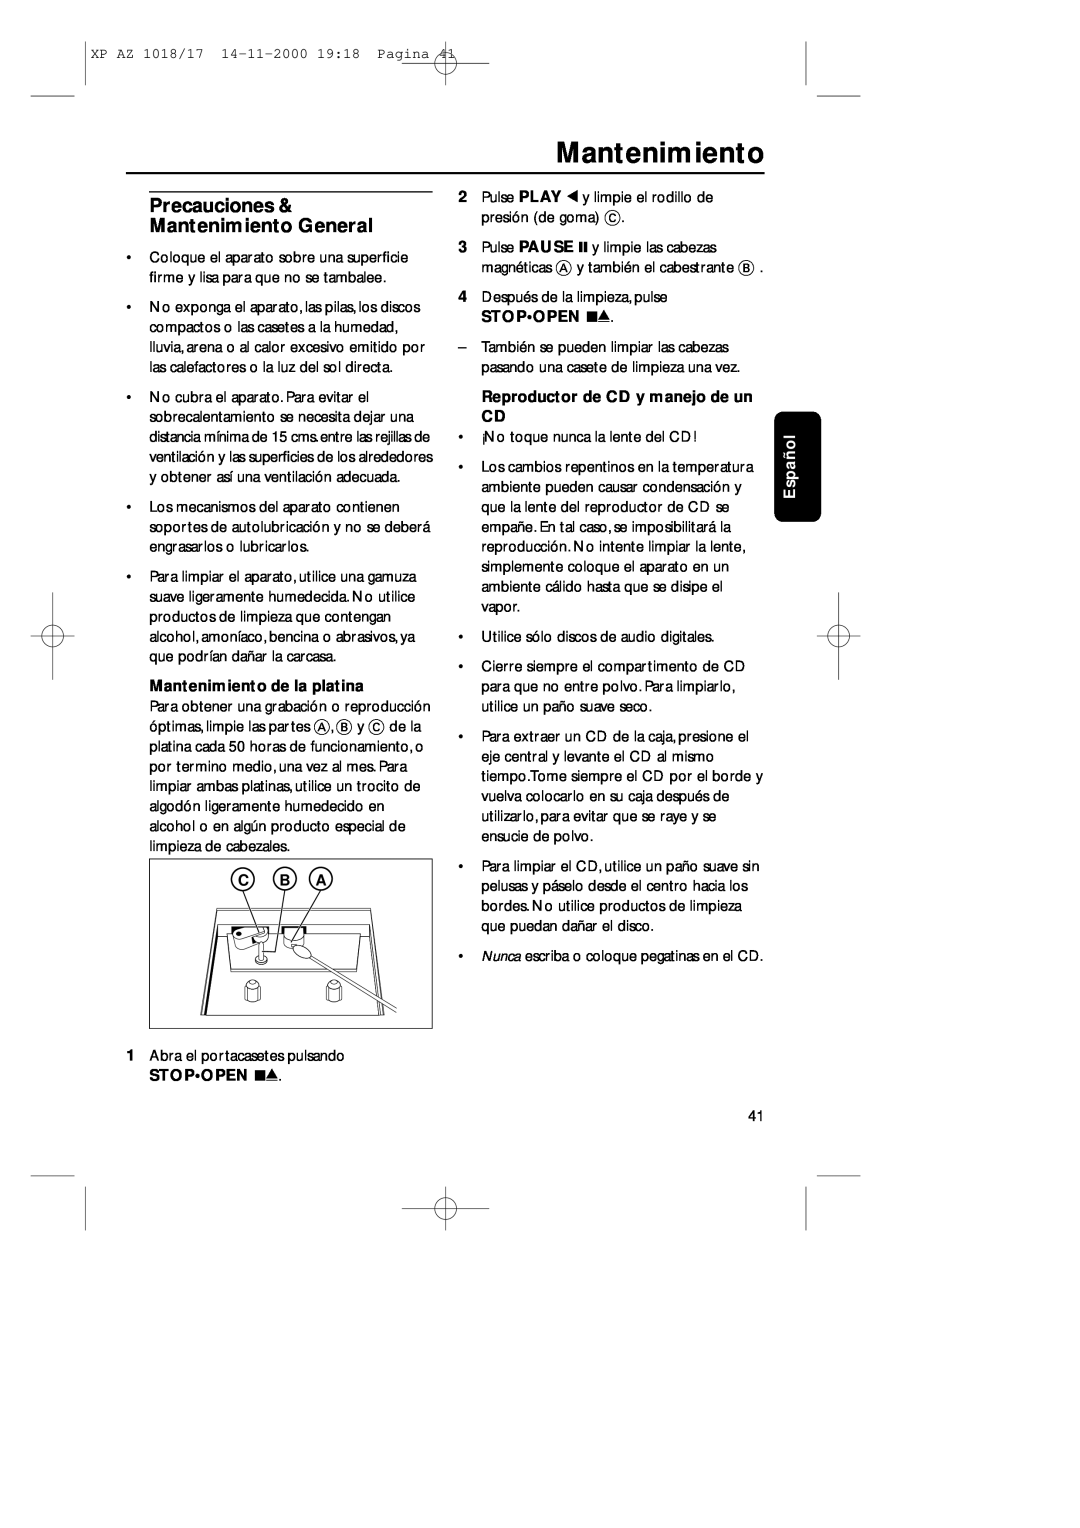 Philips 1018 manual Precauciones Mantenimiento General, C B A, Mantenimiento de la platina, Español 